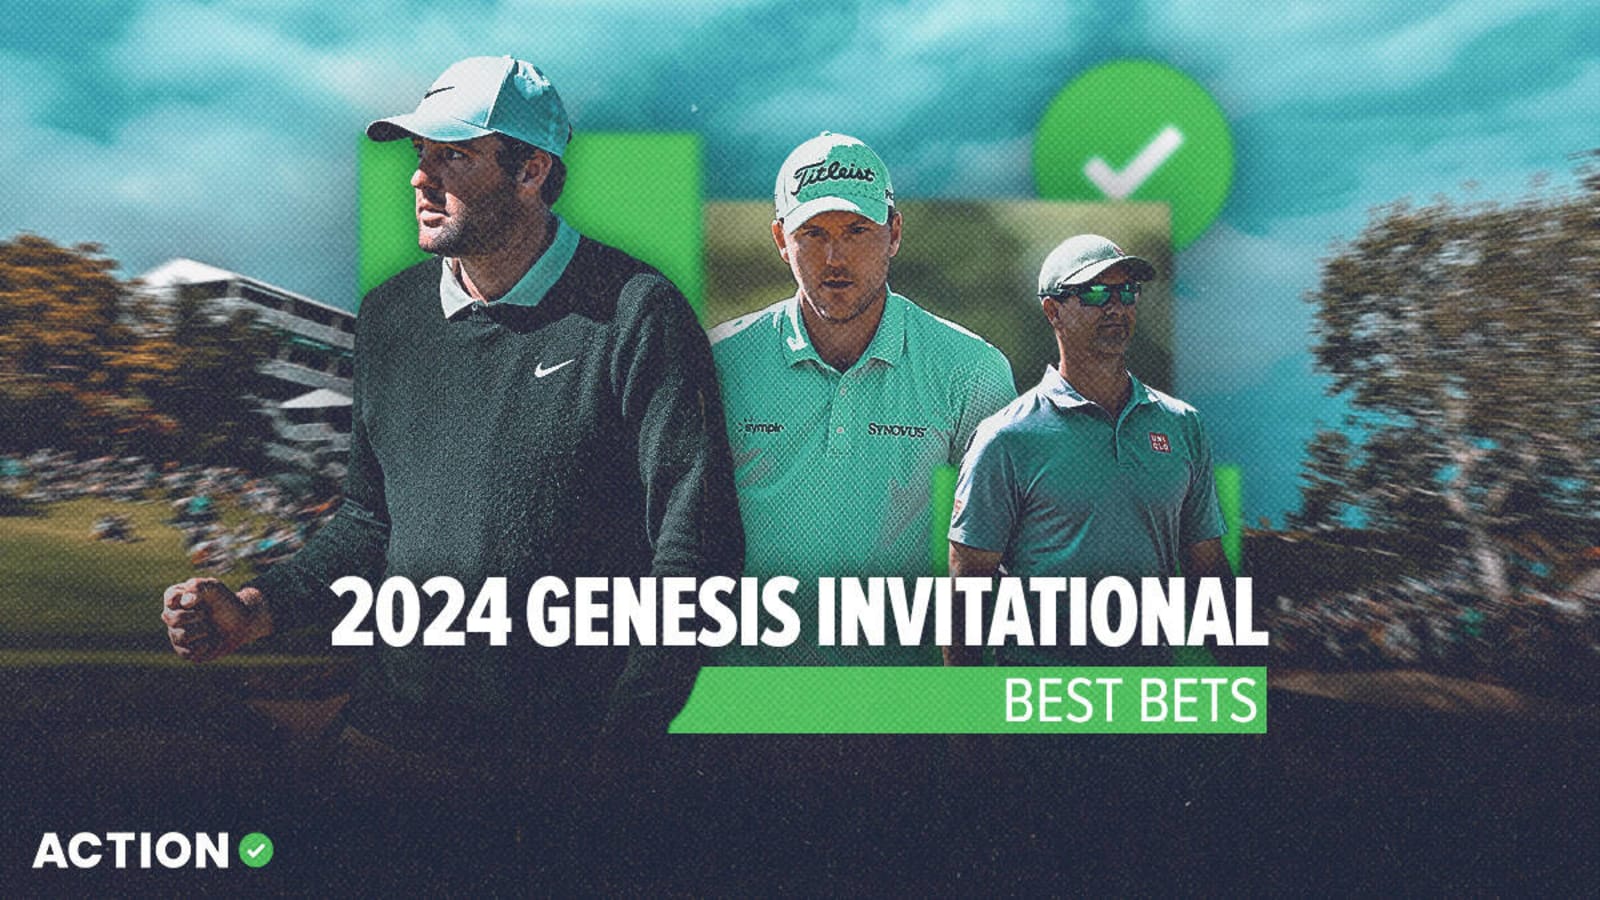 2024 Genesis Invitational best bets Scottie Scheffler and more